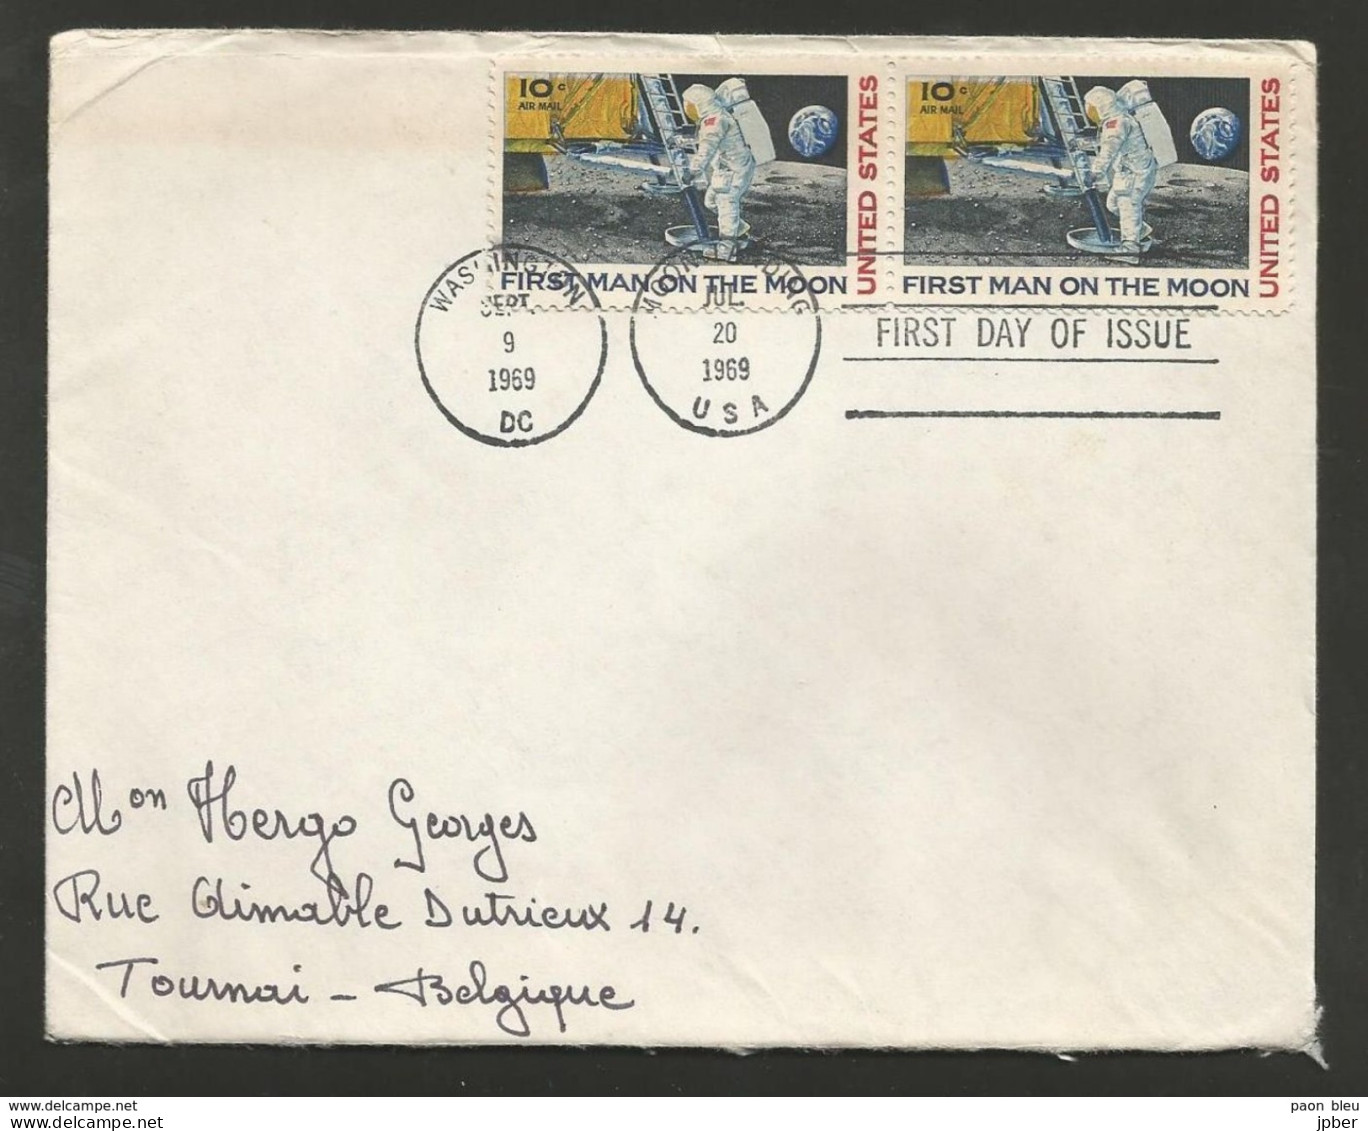 Etats-Unis - Lettre Du 20/7/69 - 1er Pas Sur La Lune - First Man On The Moon - Cartes Souvenir